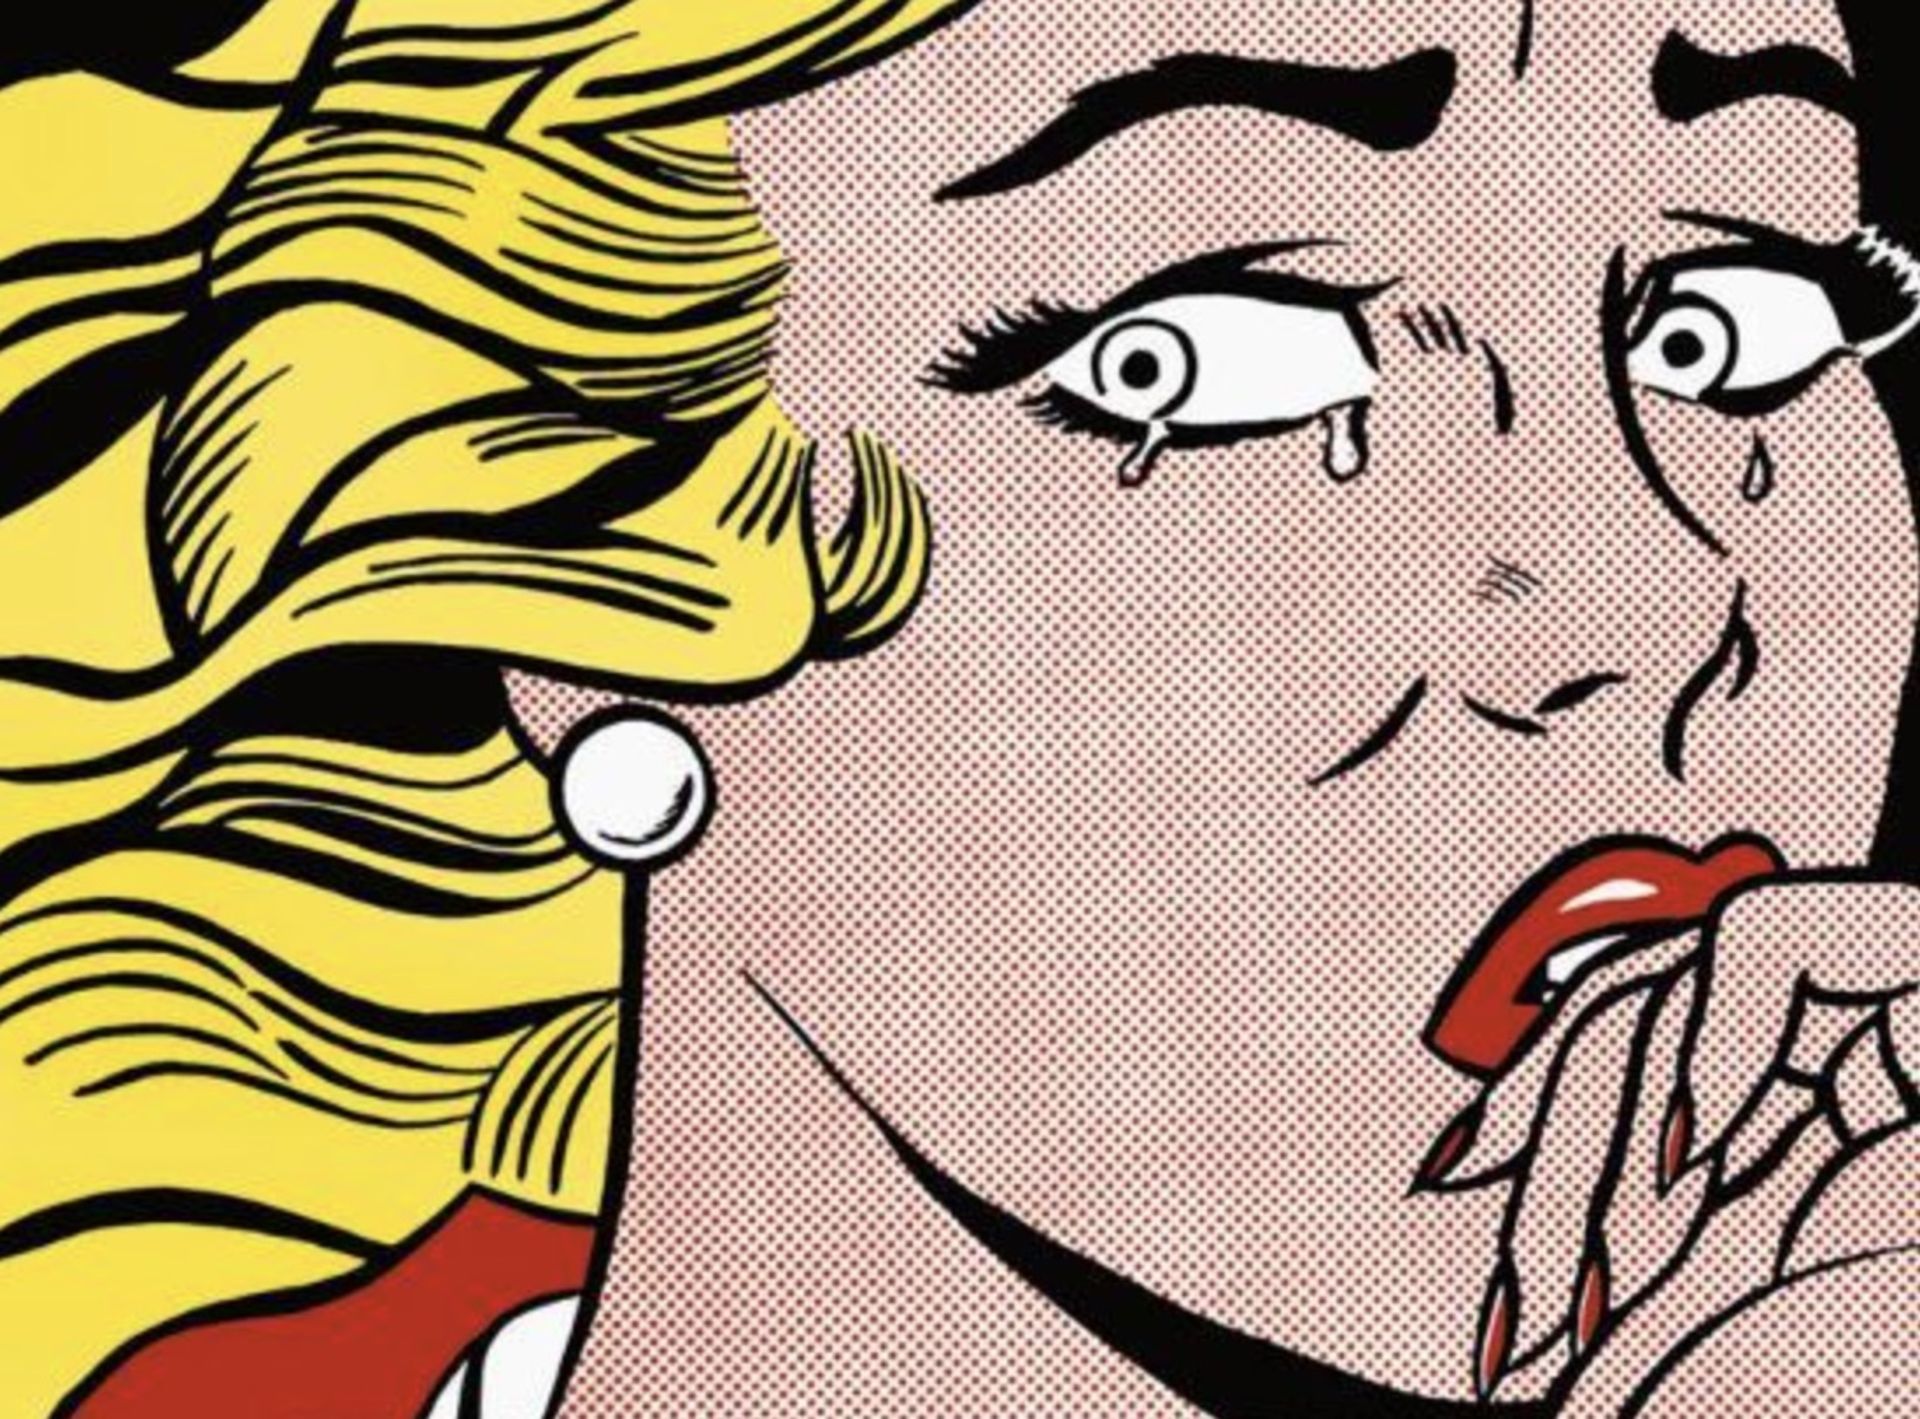 Roy Lichtenstein "Crying Girl, 1963" Print